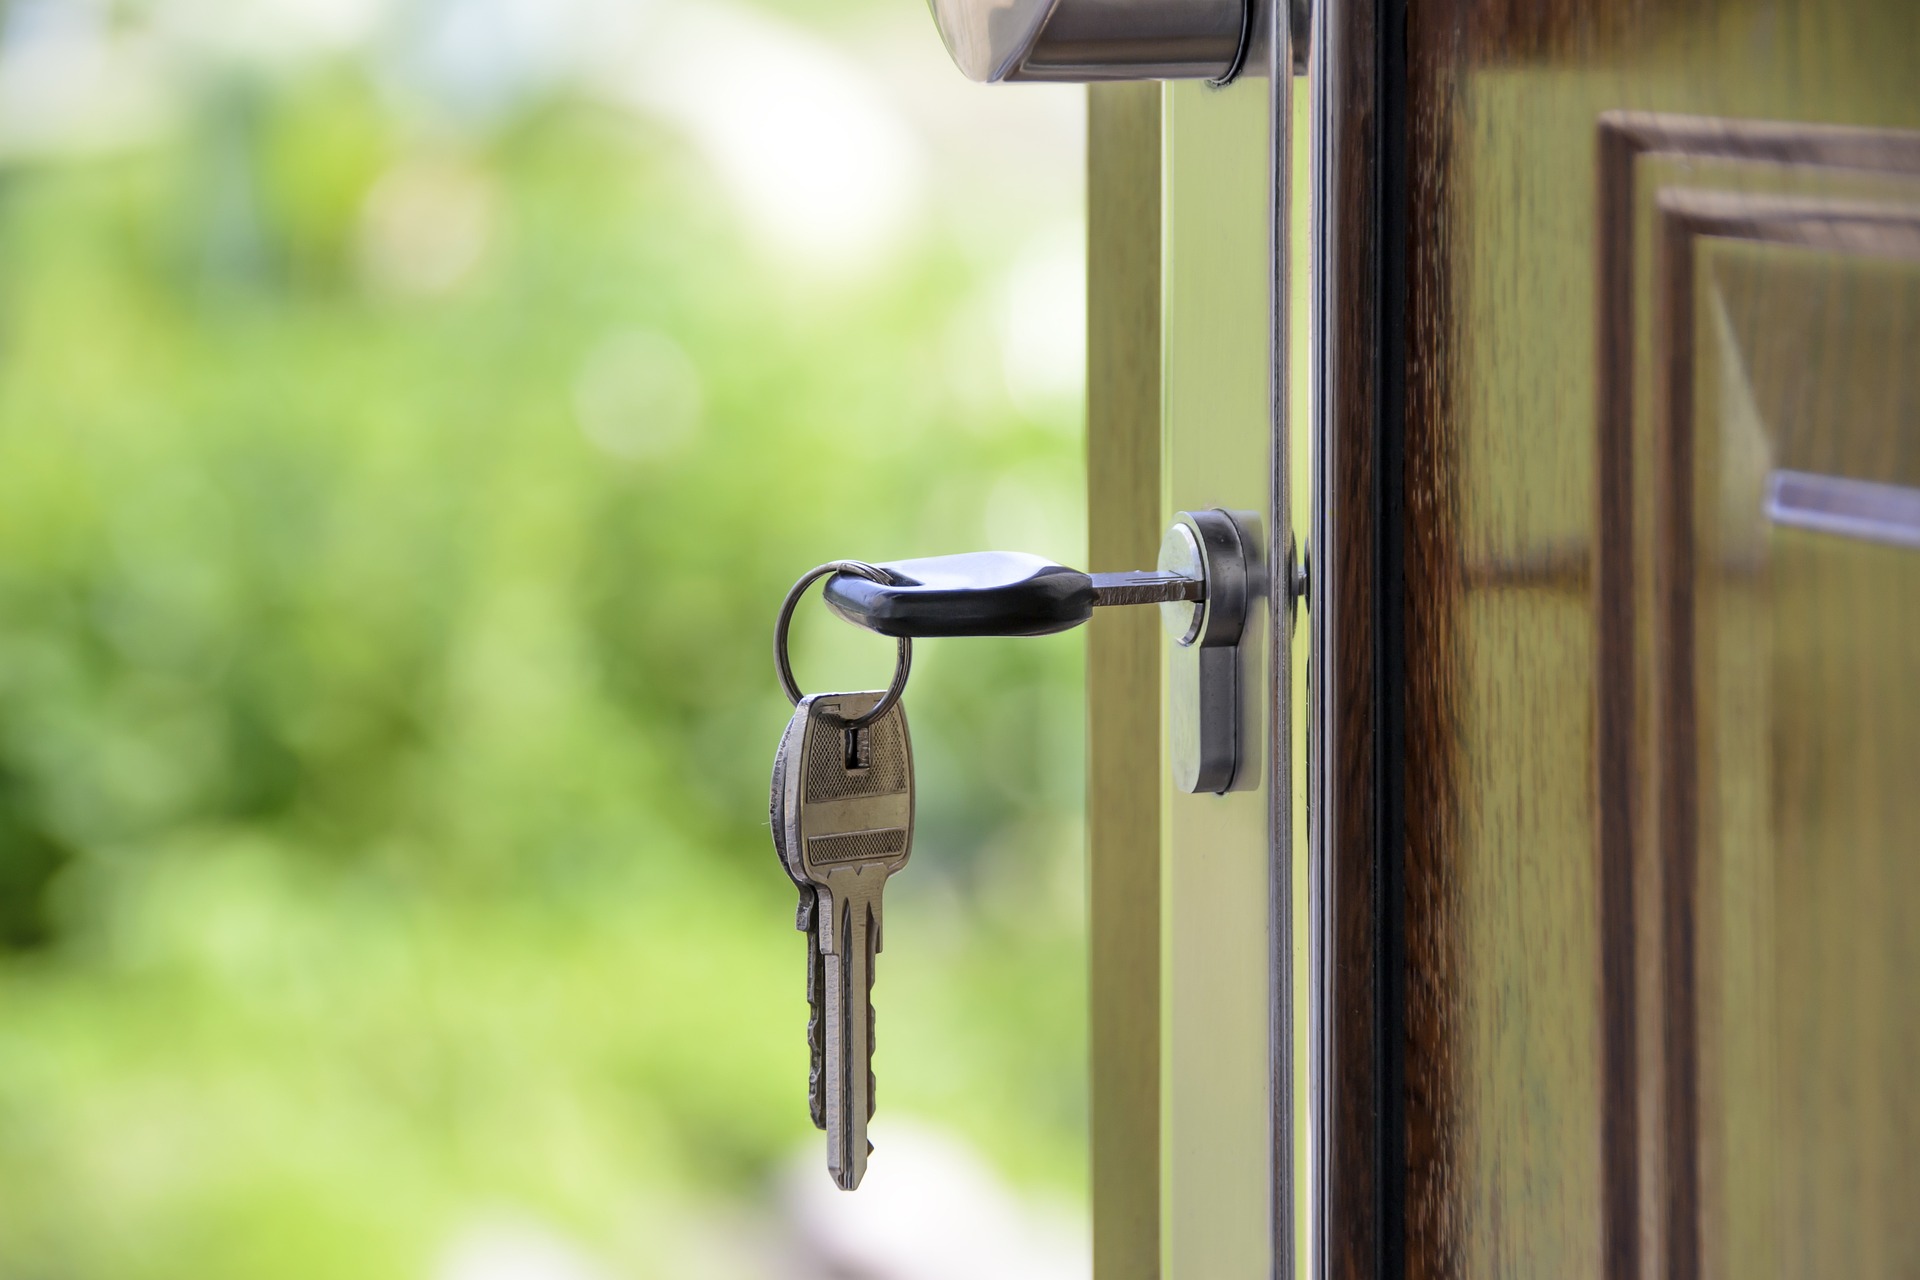 Offene Haustür mit Schlüssel im Schloss; Bild Photo Mix von Pixabay